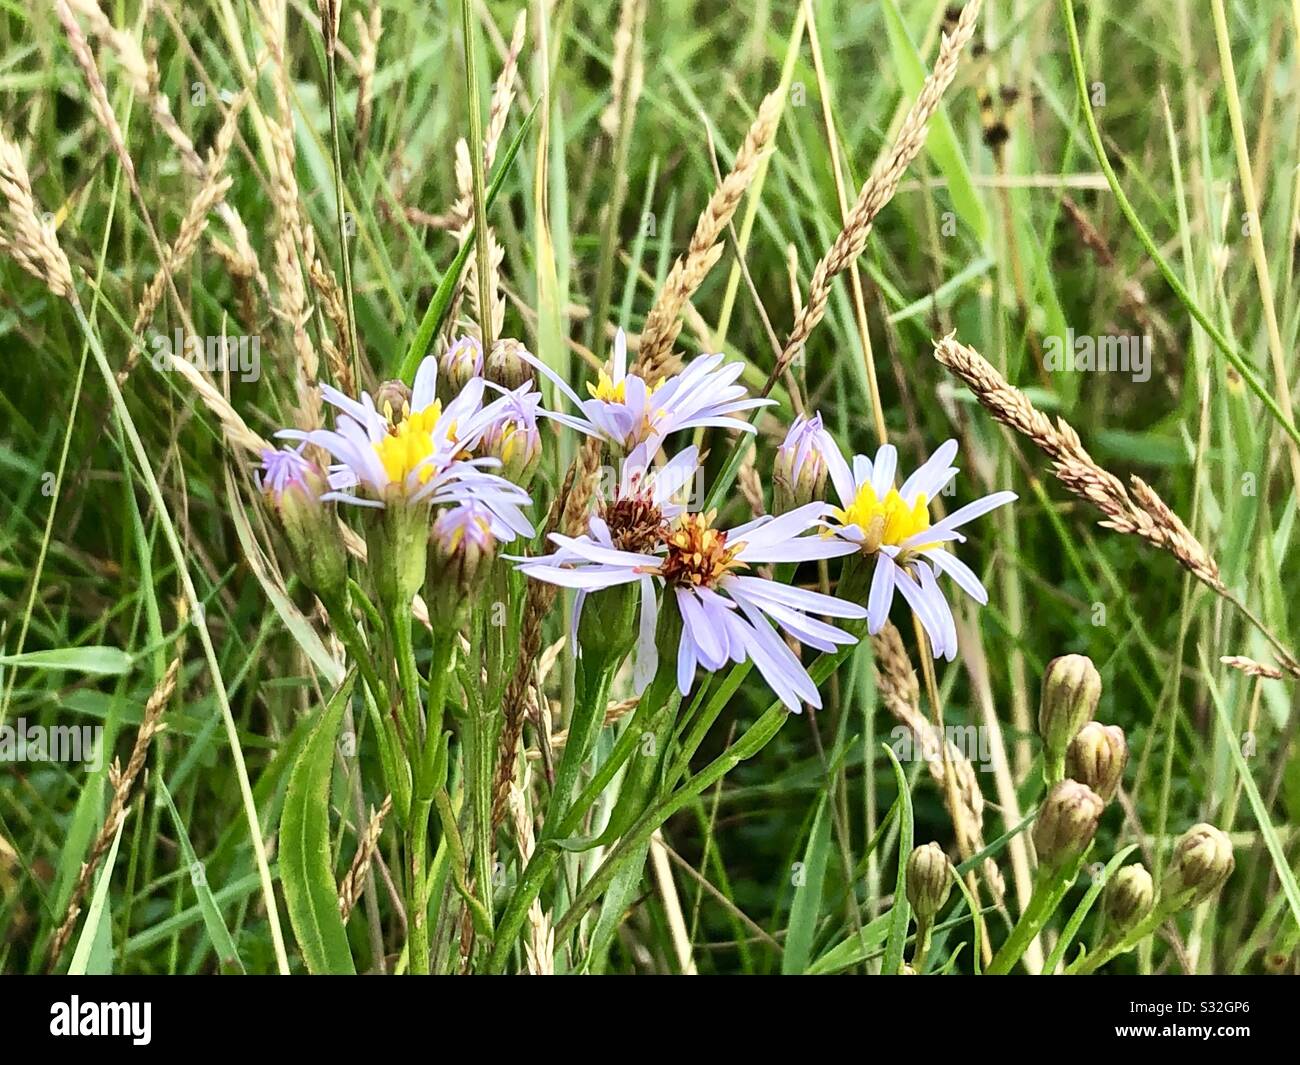 Wild meadow flowers Stock Photo